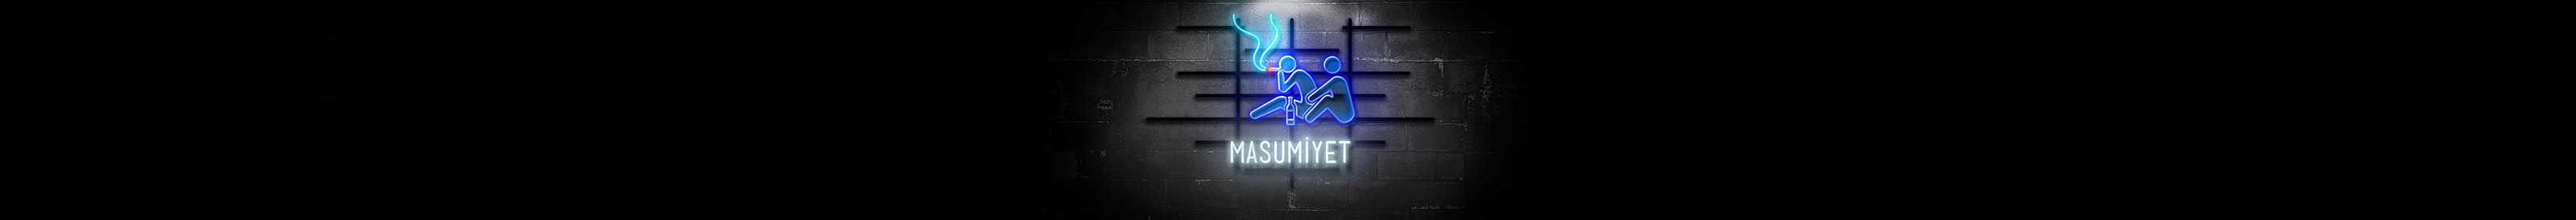 Selahattin Birgül's profile banner